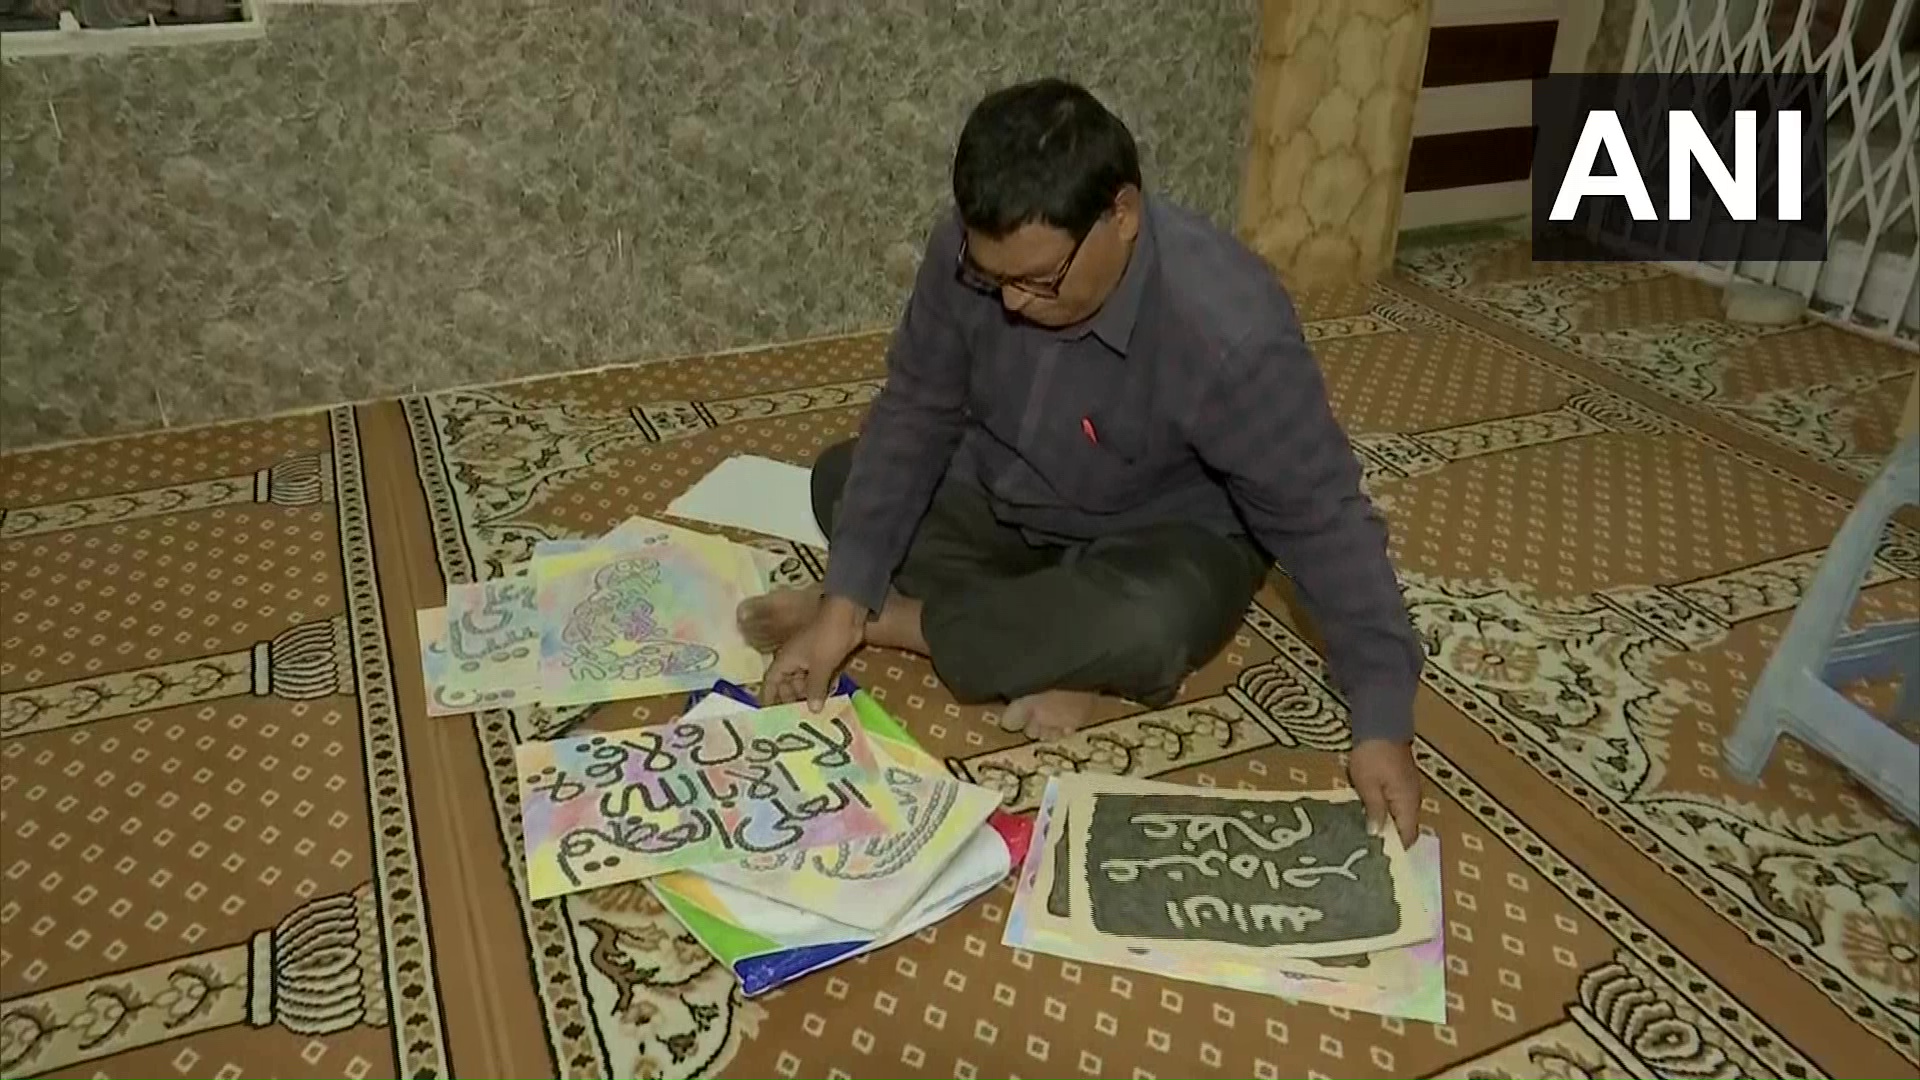  یک هندو آیات قرآن را بر روی دیوارهای مساجد خوشنویسی می کند 